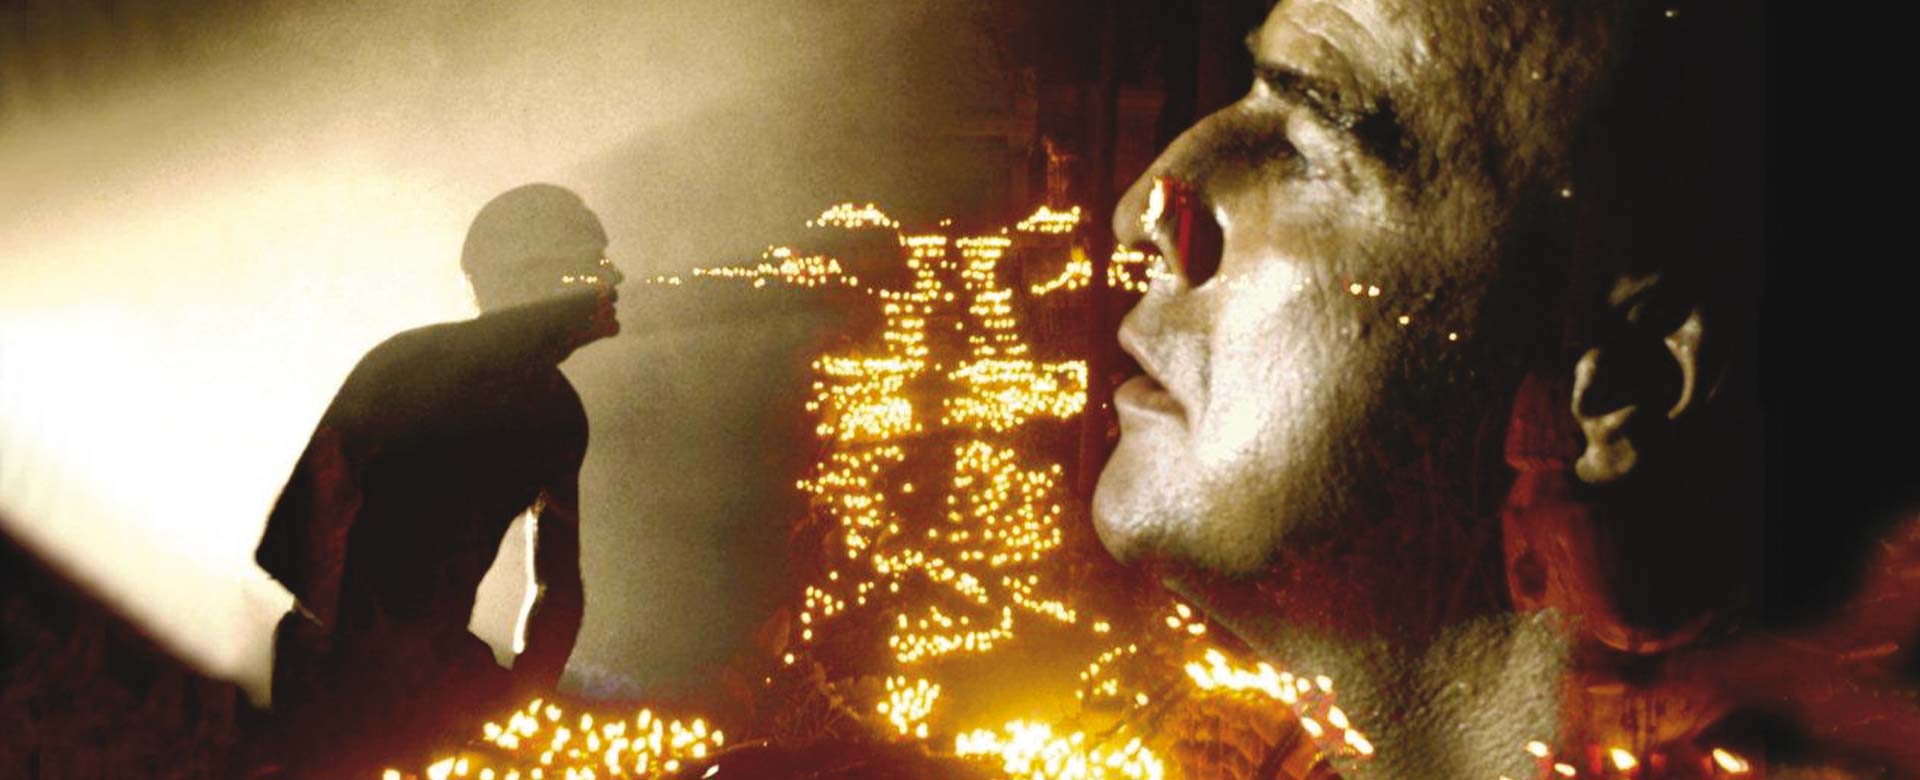 Immagine di Marlon Brando nel film Apocalypse Now